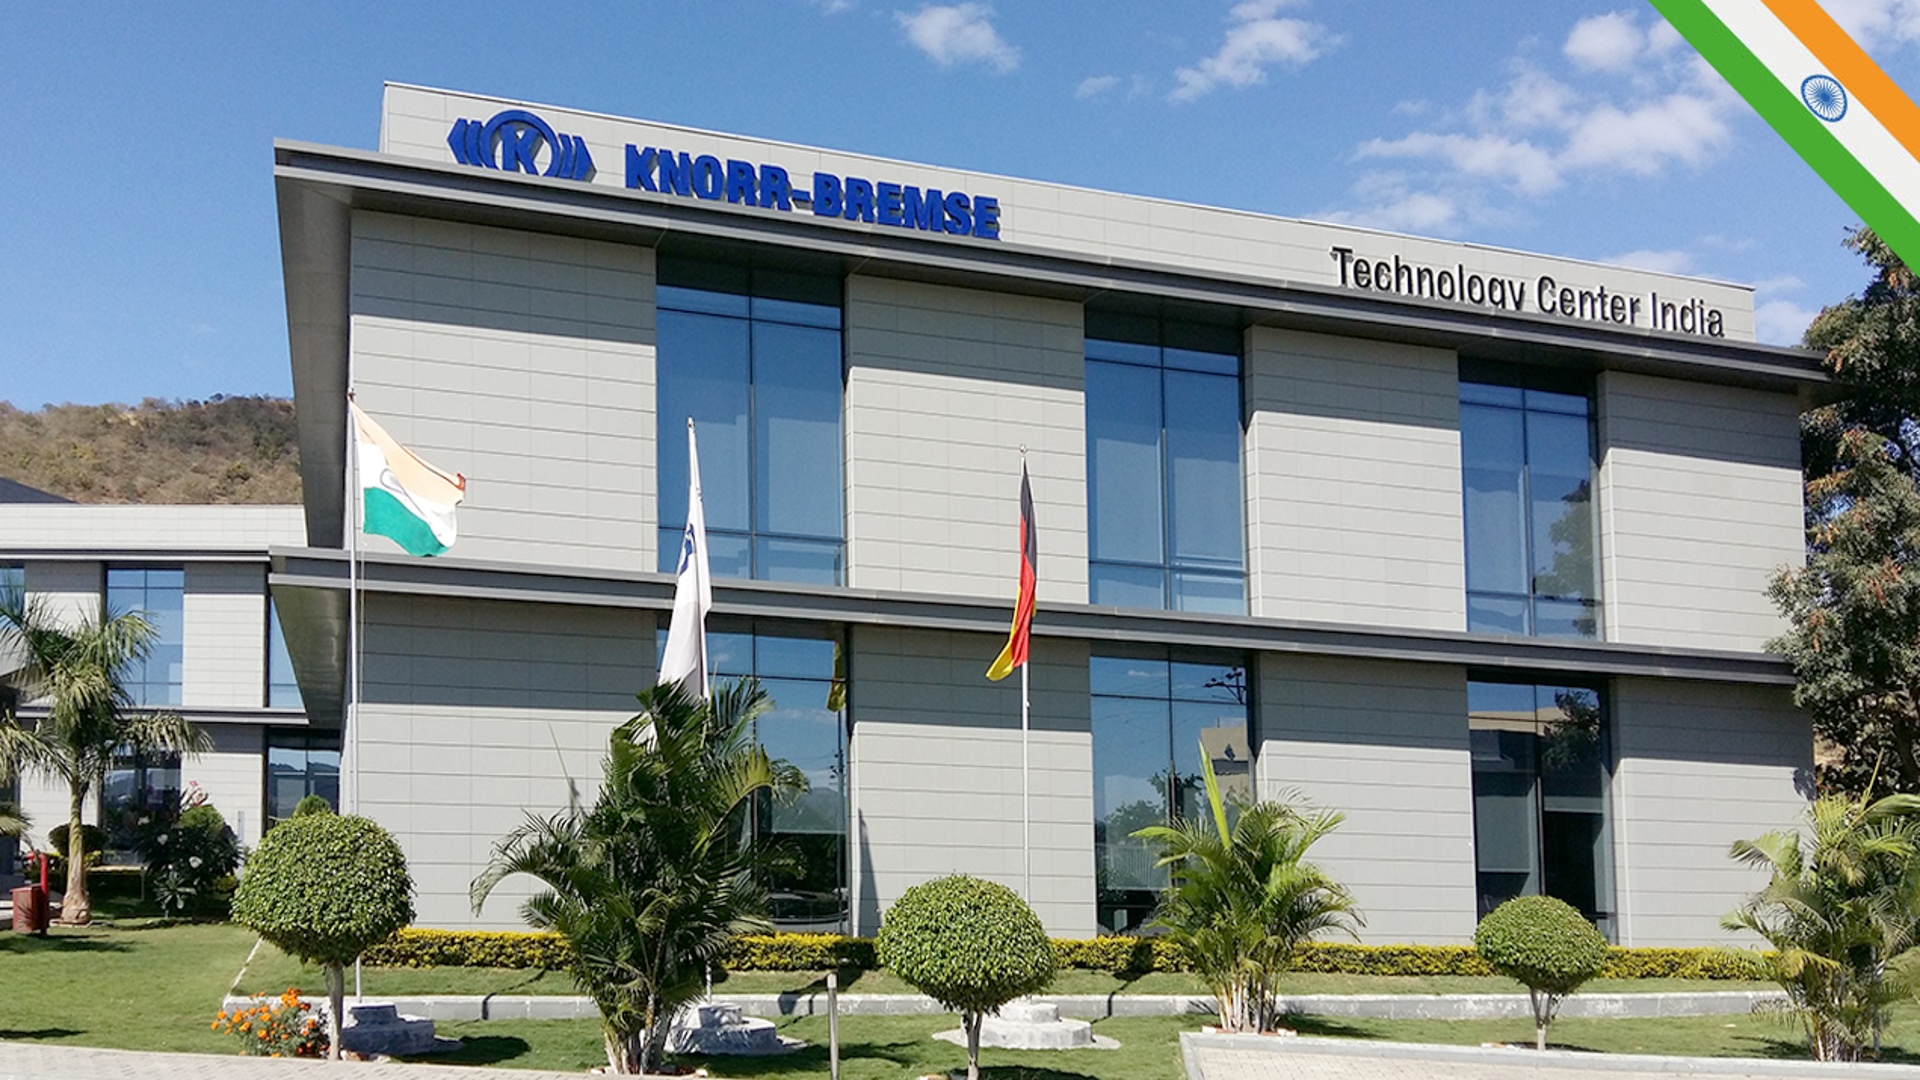 Gebäude des Knorr-Bremse Technology Center am Standort in Pune, Indien, mit Logo und Firmenschriftzug.